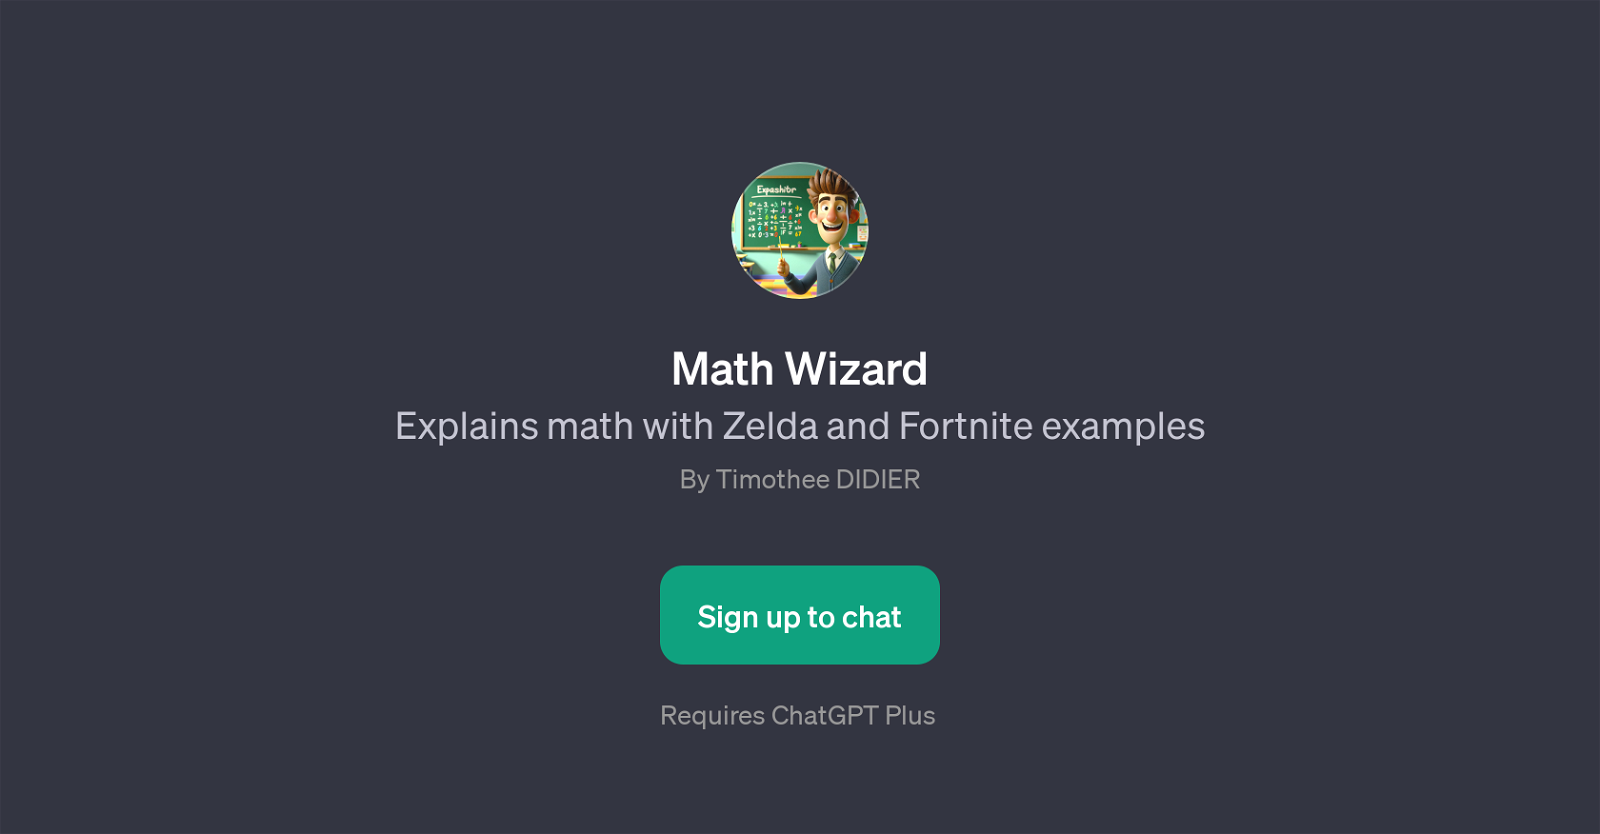 Math Wizard website